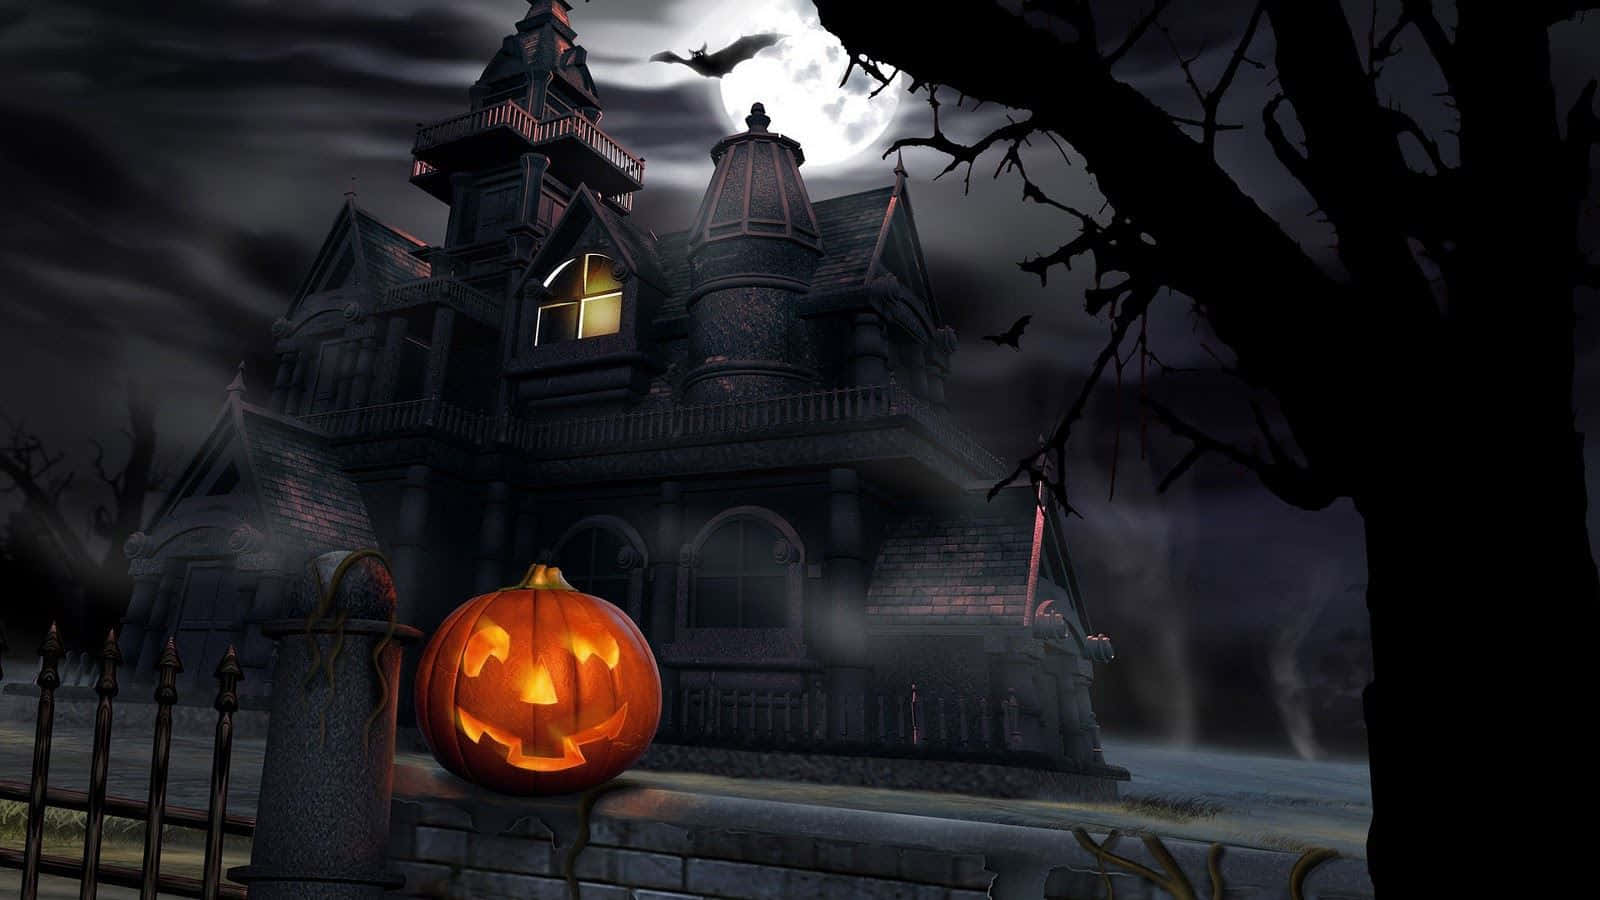 Bliinspirerad Av Halloween Med Denna Spöklika Macbook-bakgrund. Wallpaper